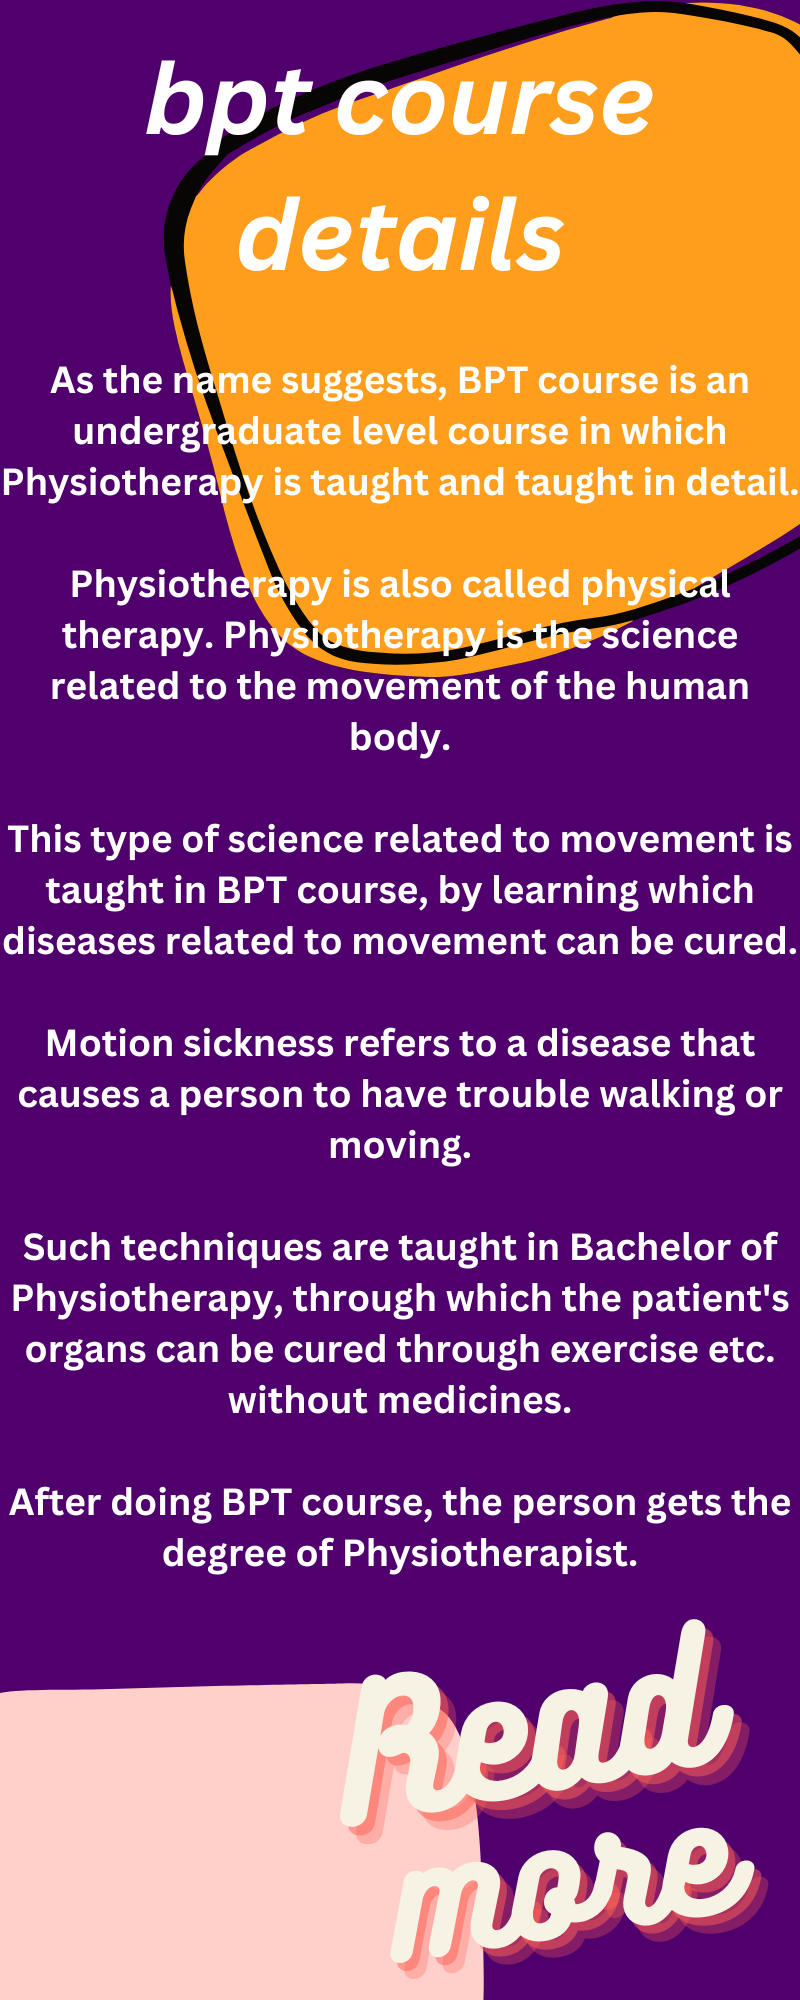 BPT course details